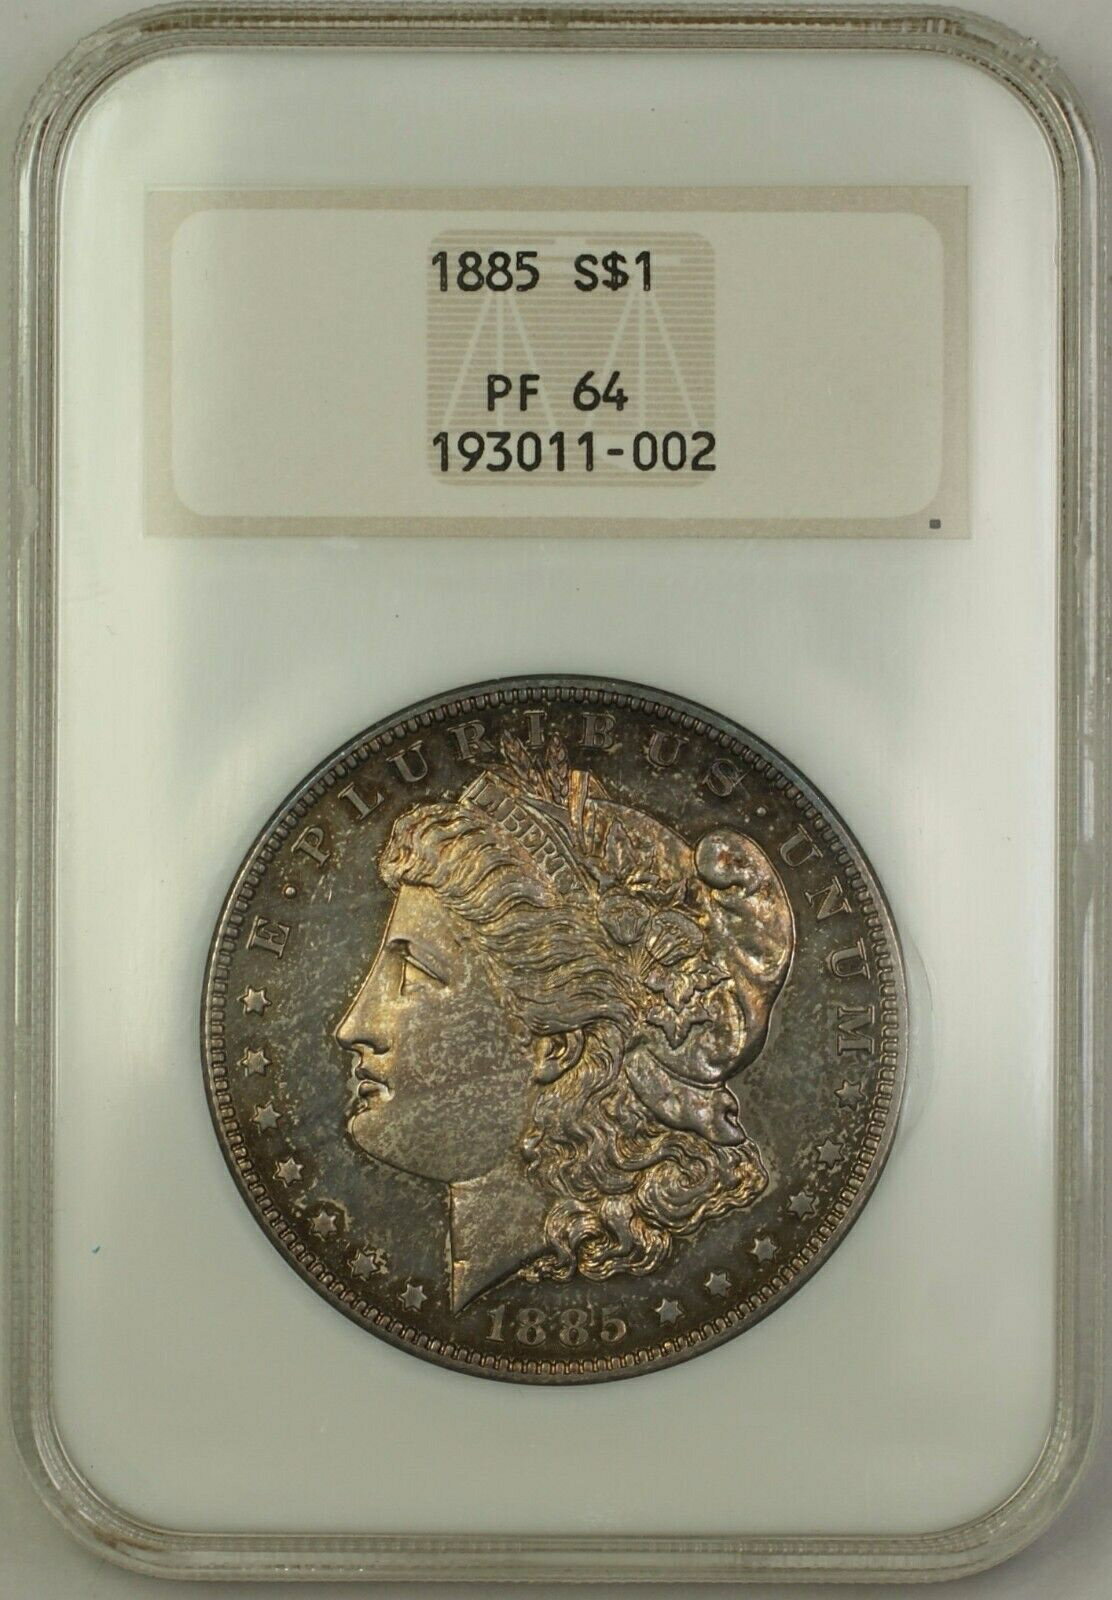 【極美品/品質保証書付】 アンティークコイン 銀貨 1885 Proof Morgan Silver Dollar $1 Old NGC Holder PF-64 Toned (Better Coin) [送料無料] #sct-wr-011201-15343